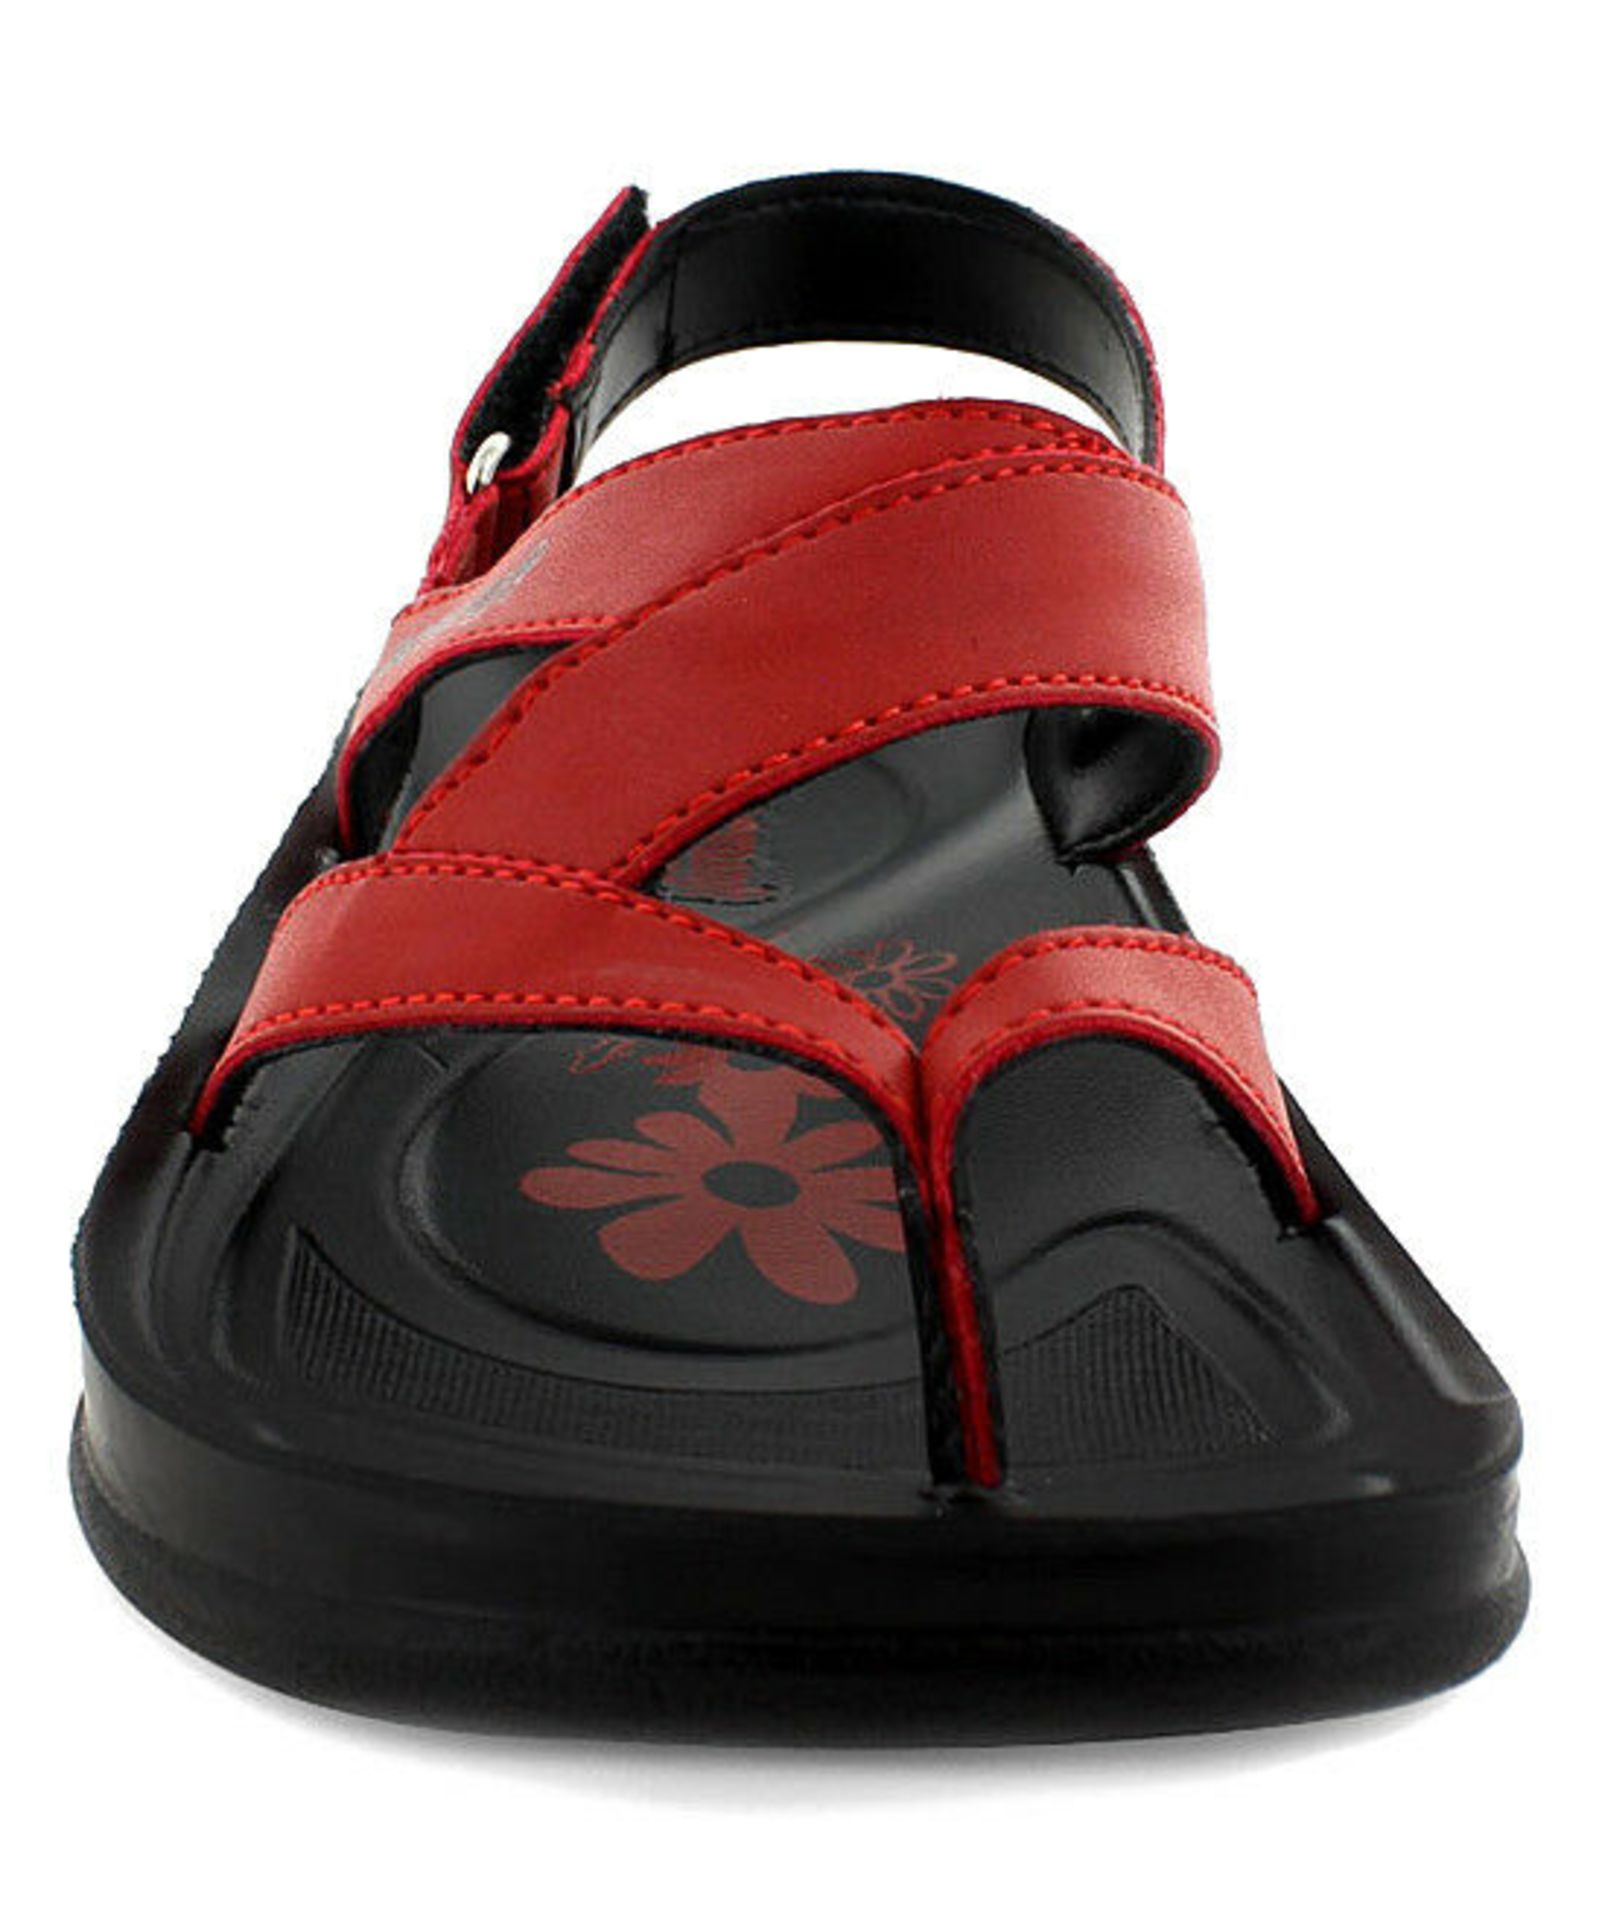 Aerosoft Red & Black Deke Sandal (Uk Size:3.5/Us Size:6) (New With Box) [Ref: 48556461-B-004] - Image 3 of 5